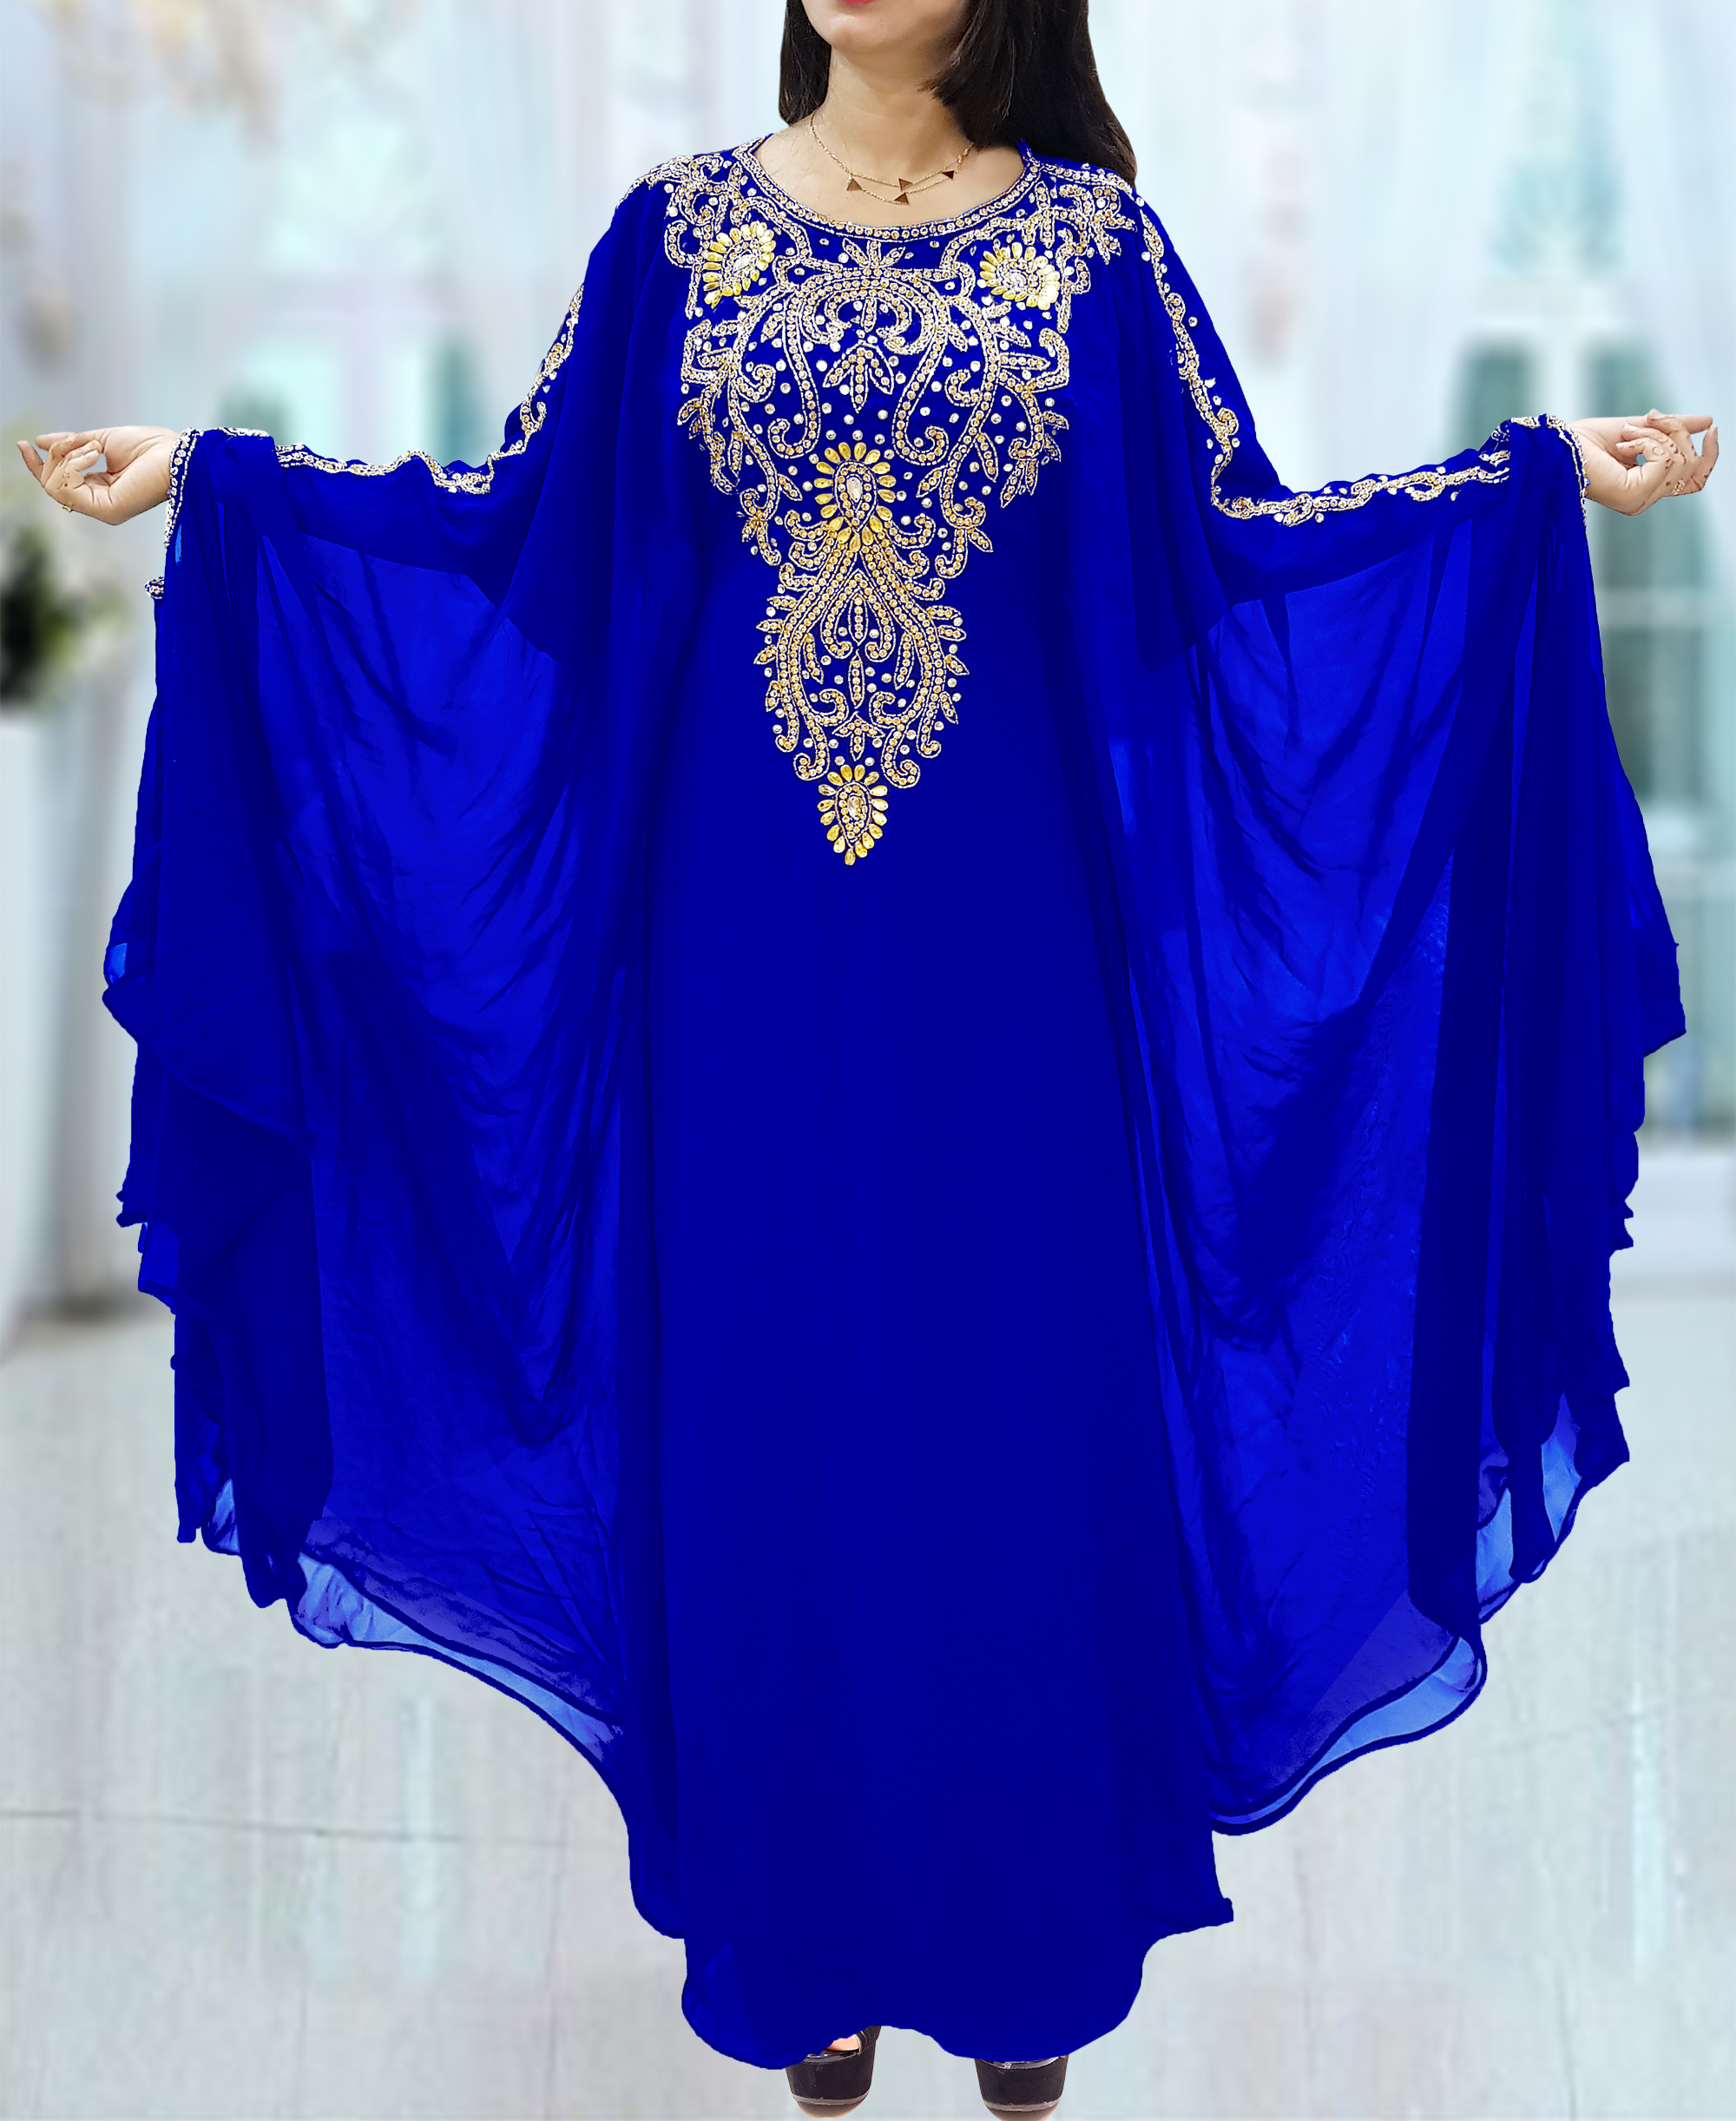 royal blue work dress